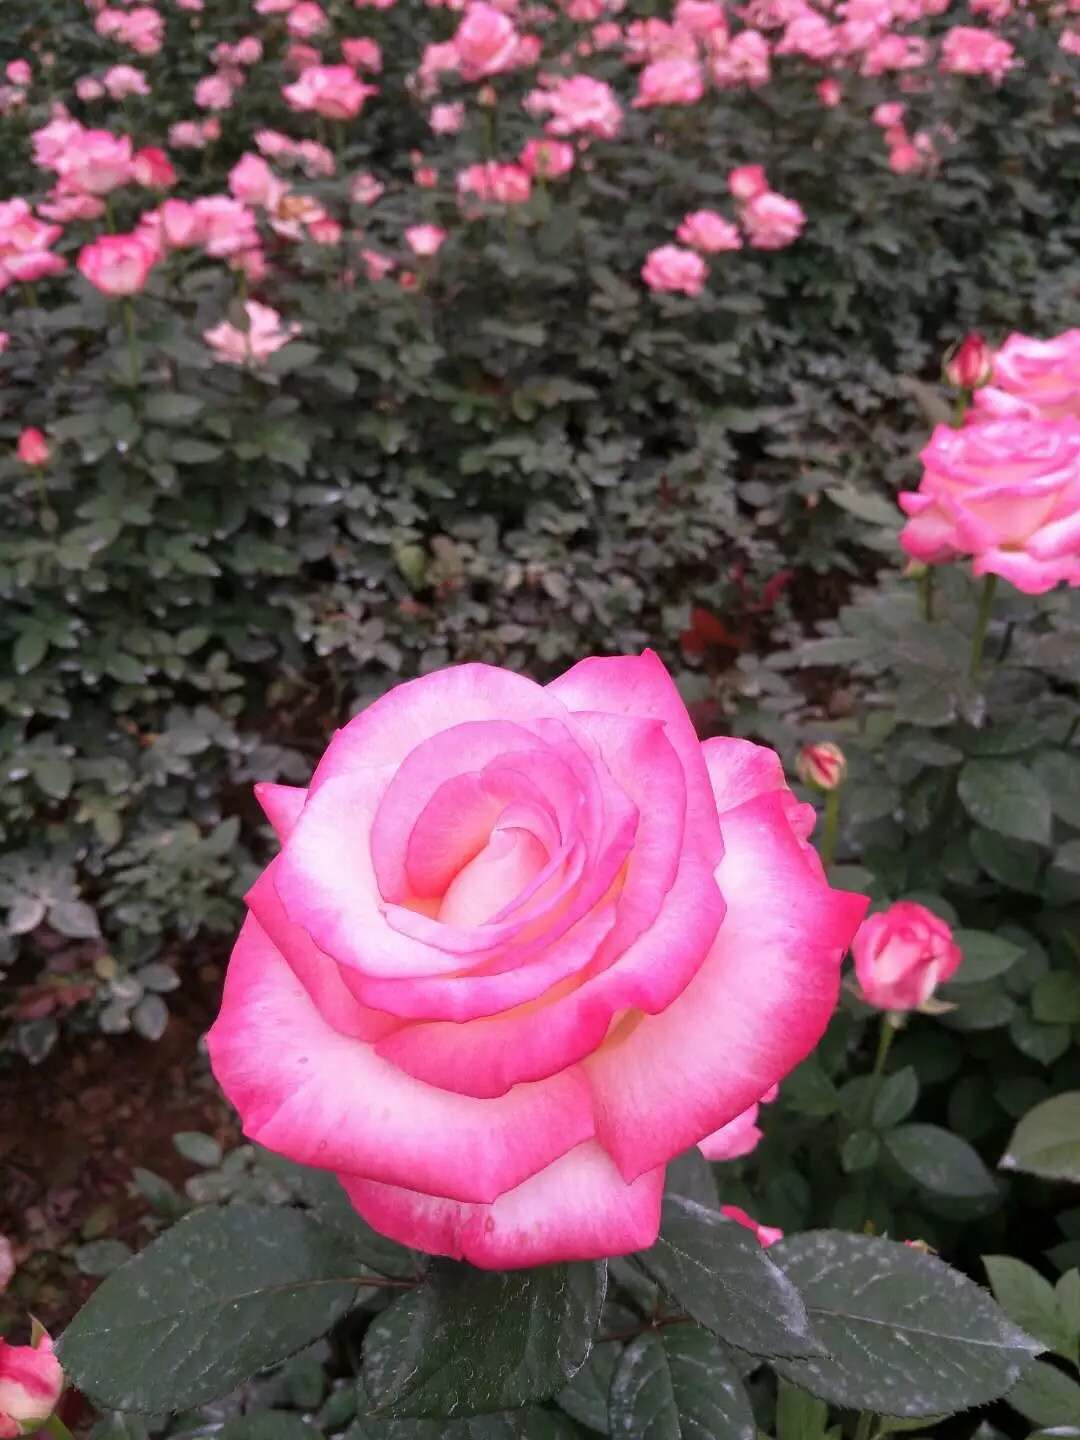 迪威娜玫瑰苗报价 迪威娜玫瑰苗供应商 云南迪威娜玫瑰苗图片